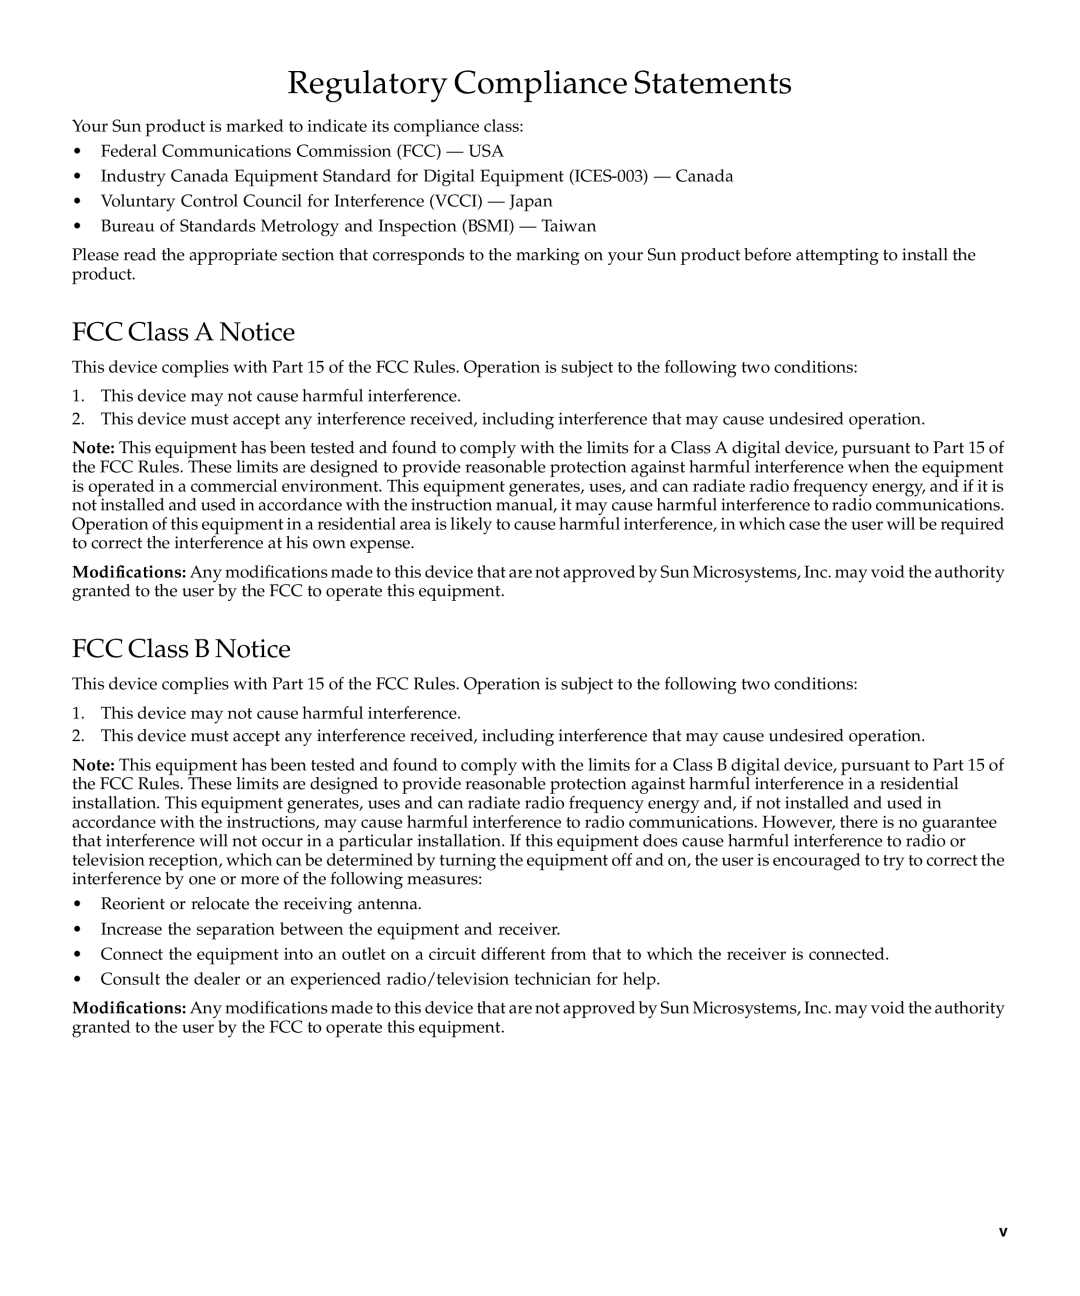 Sun Microsystems X2270 manual FCC Class a Notice, FCC Class B Notice 